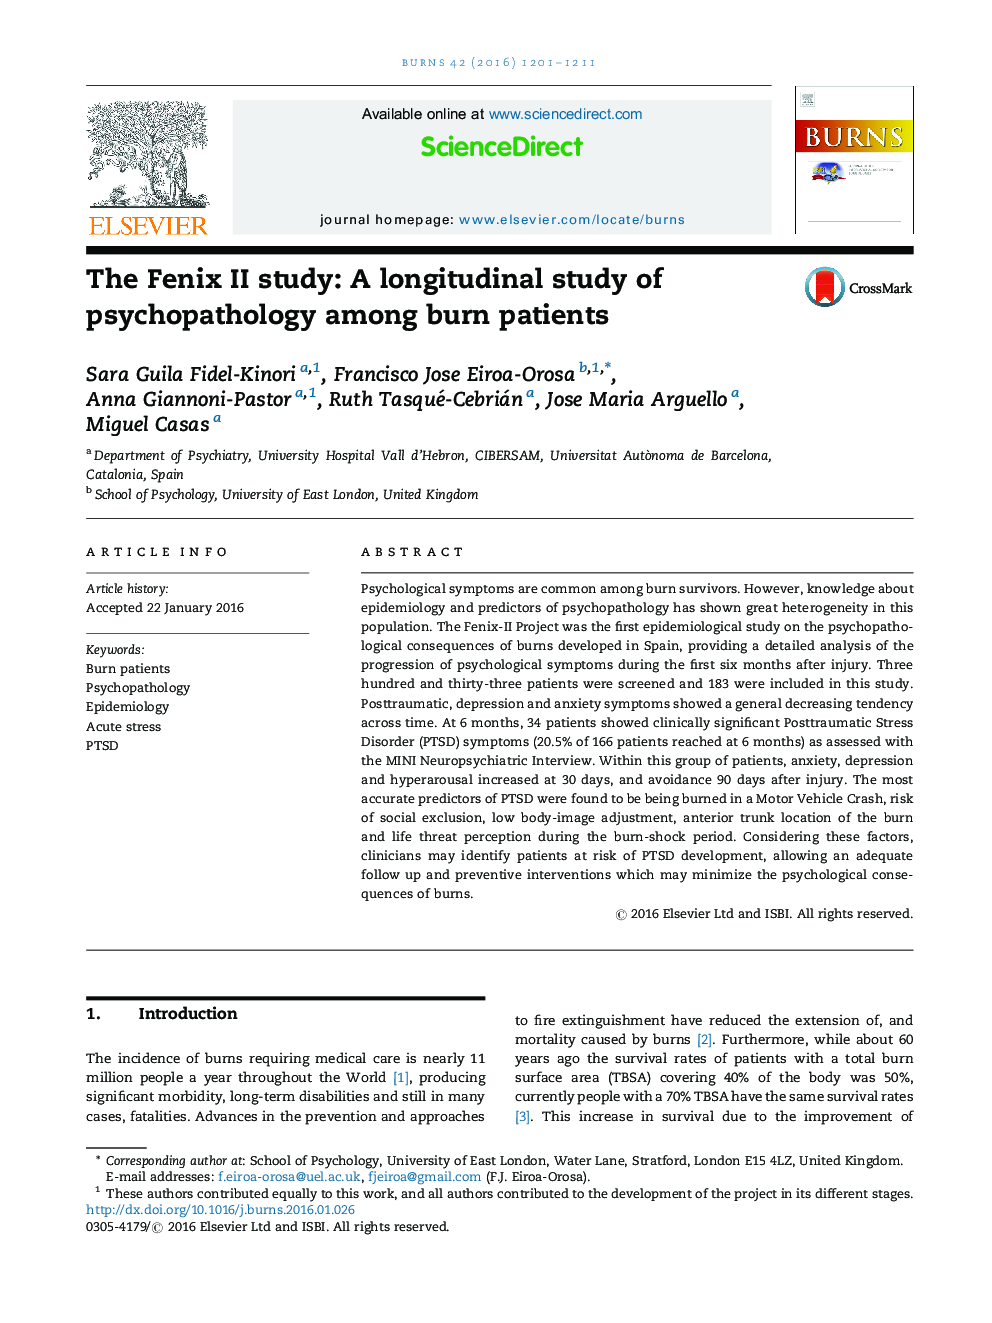 مطالعه Fenix II: یک مطالعه طولی در مورد بیماری روانپزشکی در میان بیماران سوختگی